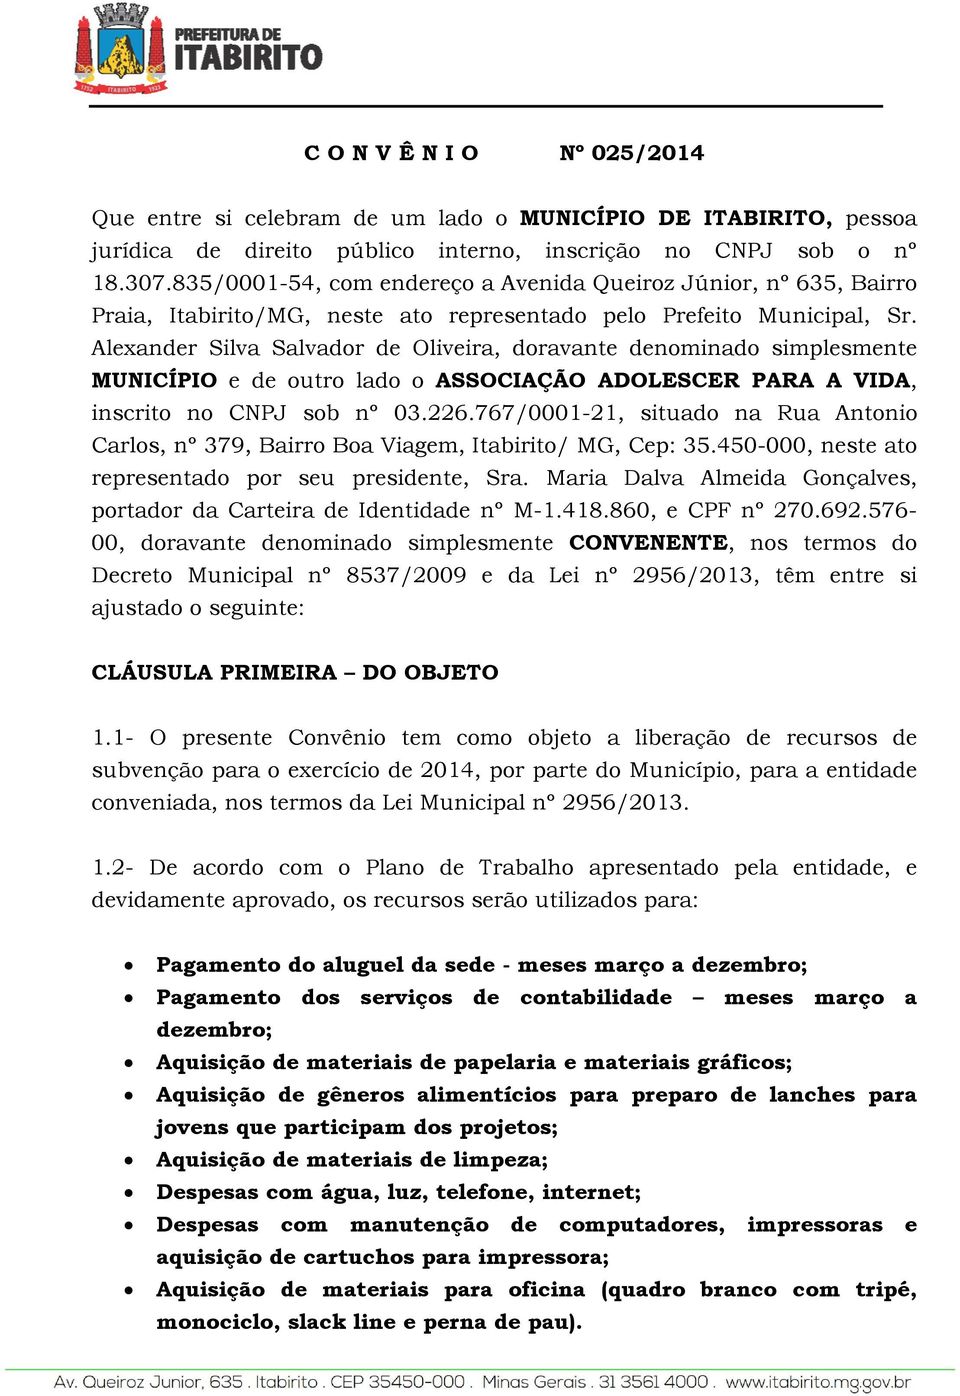 Alexander Silva Salvador de Oliveira, doravante denominado simplesmente MUNICÍPIO e de outro lado o ASSOCIAÇÃO ADOLESCER PARA A VIDA, inscrito no CNPJ sob nº 03.226.